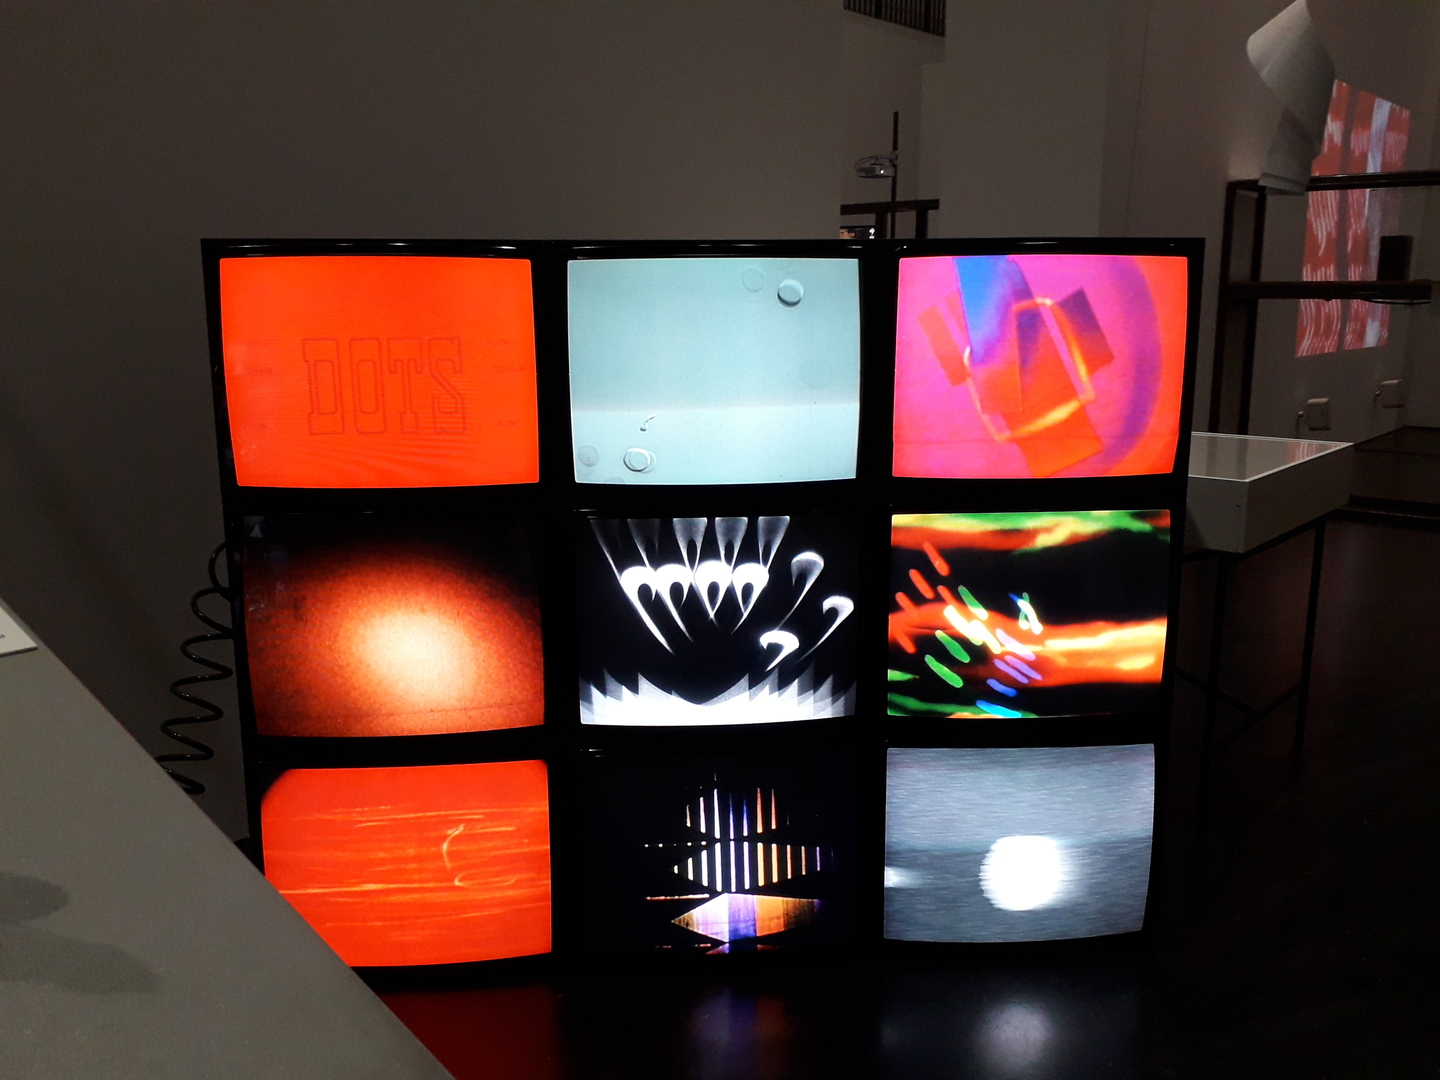 Mosaïque d'écrans cathodiques avec différentes vidéos à dominante rouge